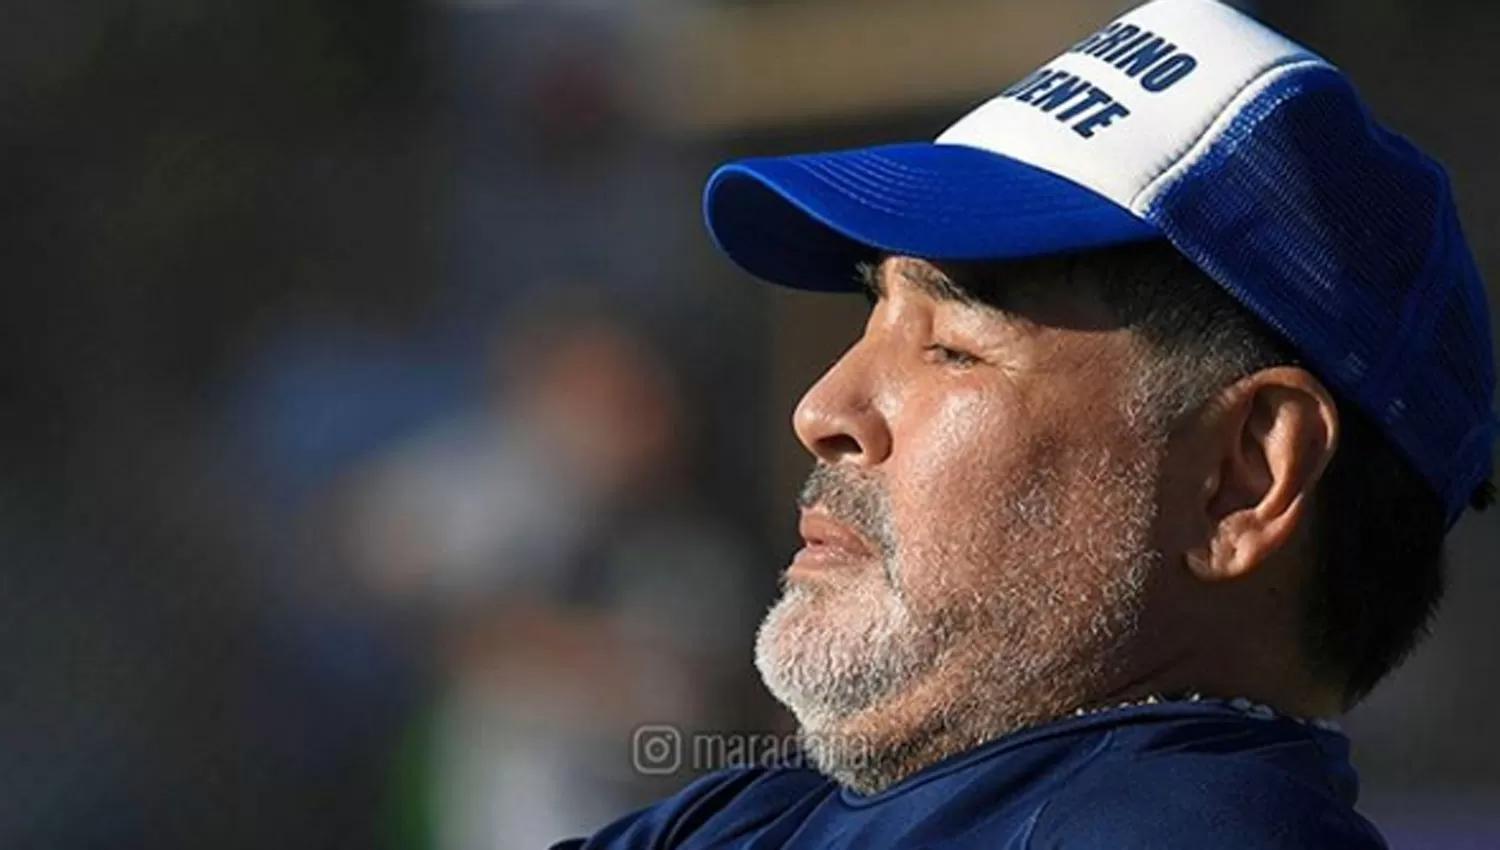 LEALTAD. Maradona había prometido seguir dirigiendo a su equipo si es que Pellegrino ganaba las elecciones.